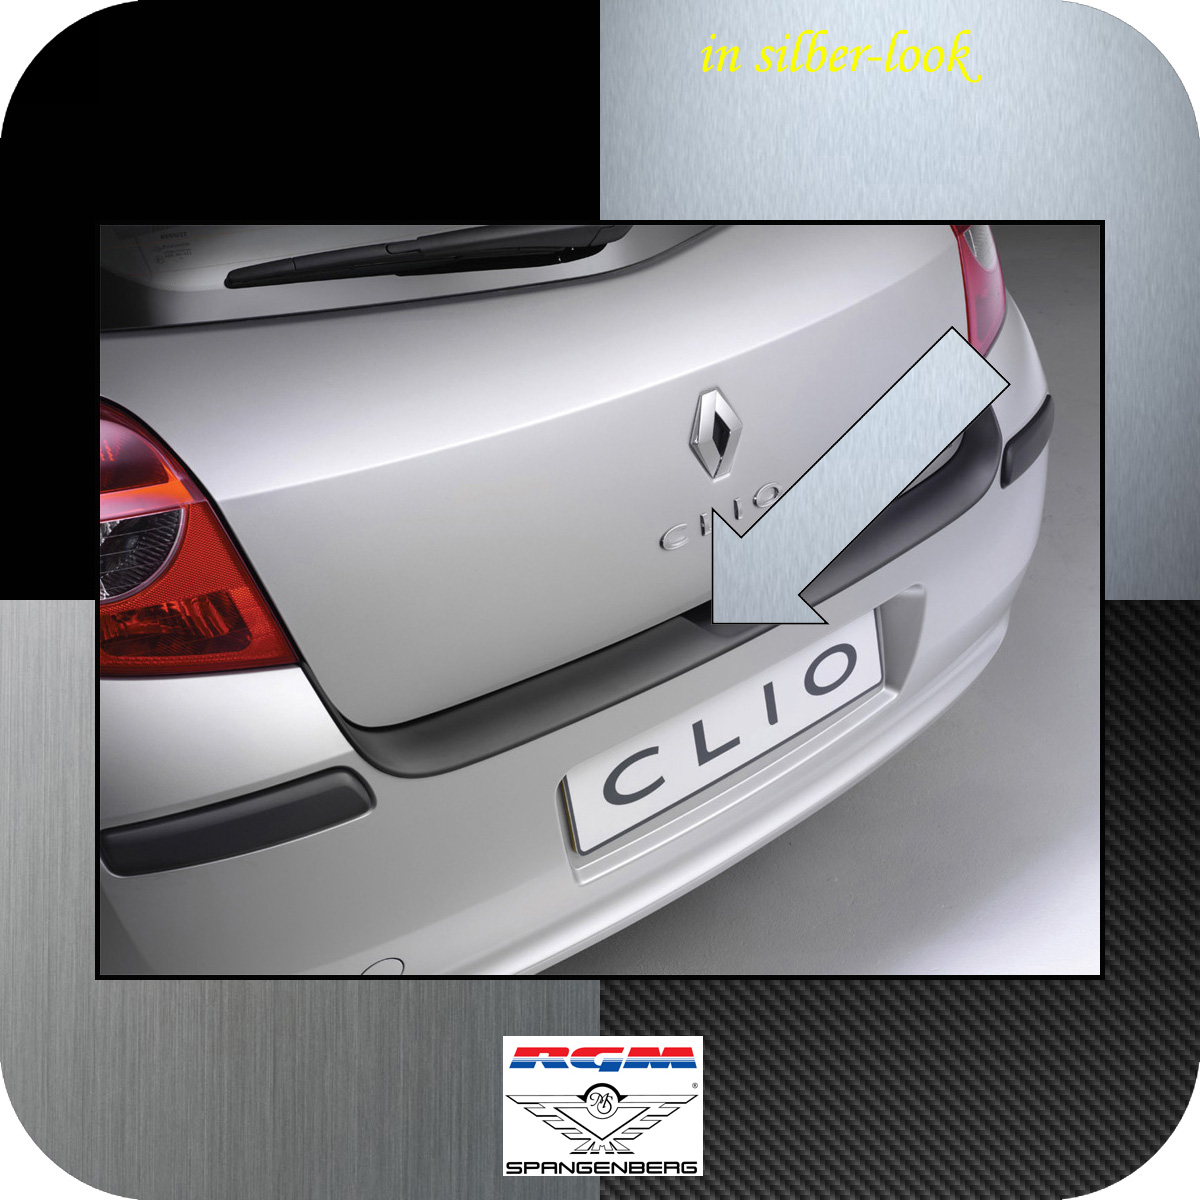 Ladekantenschutz Silber-Look Renault Clio 3 III vor facelift Bj 2005-09 3506145